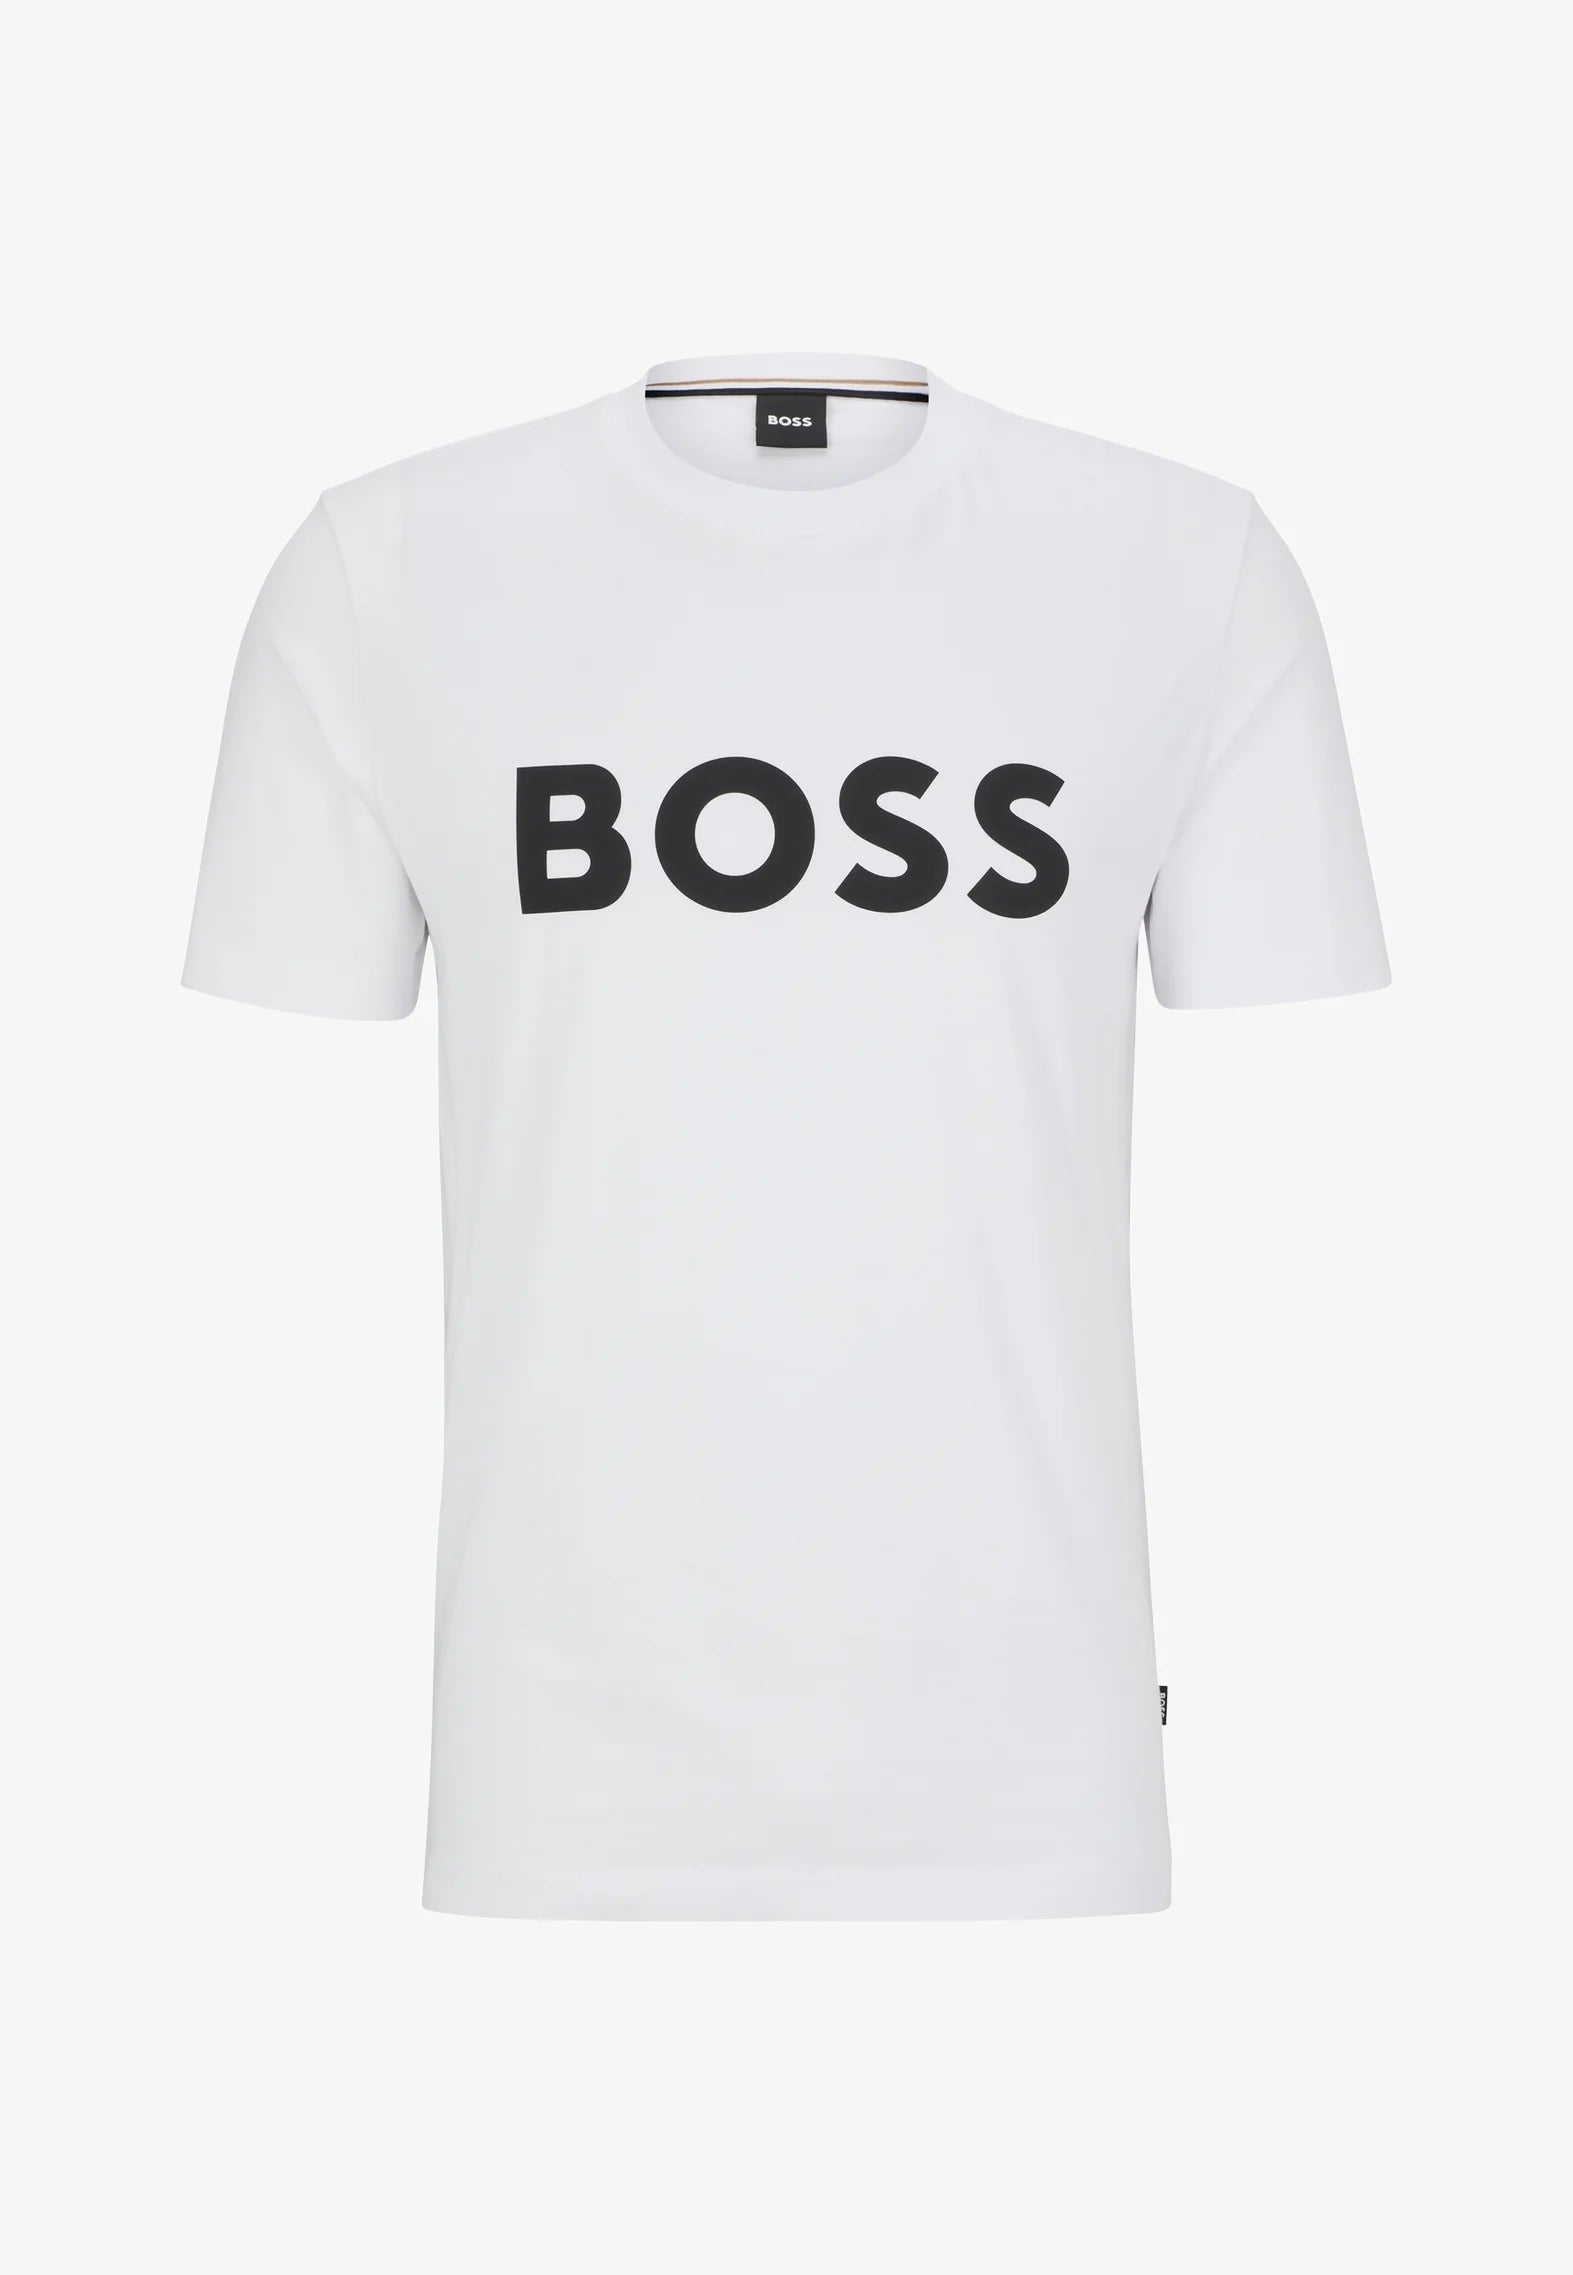 T-Shirt logo BOSS blanc en coton pour homme I Georgespaul